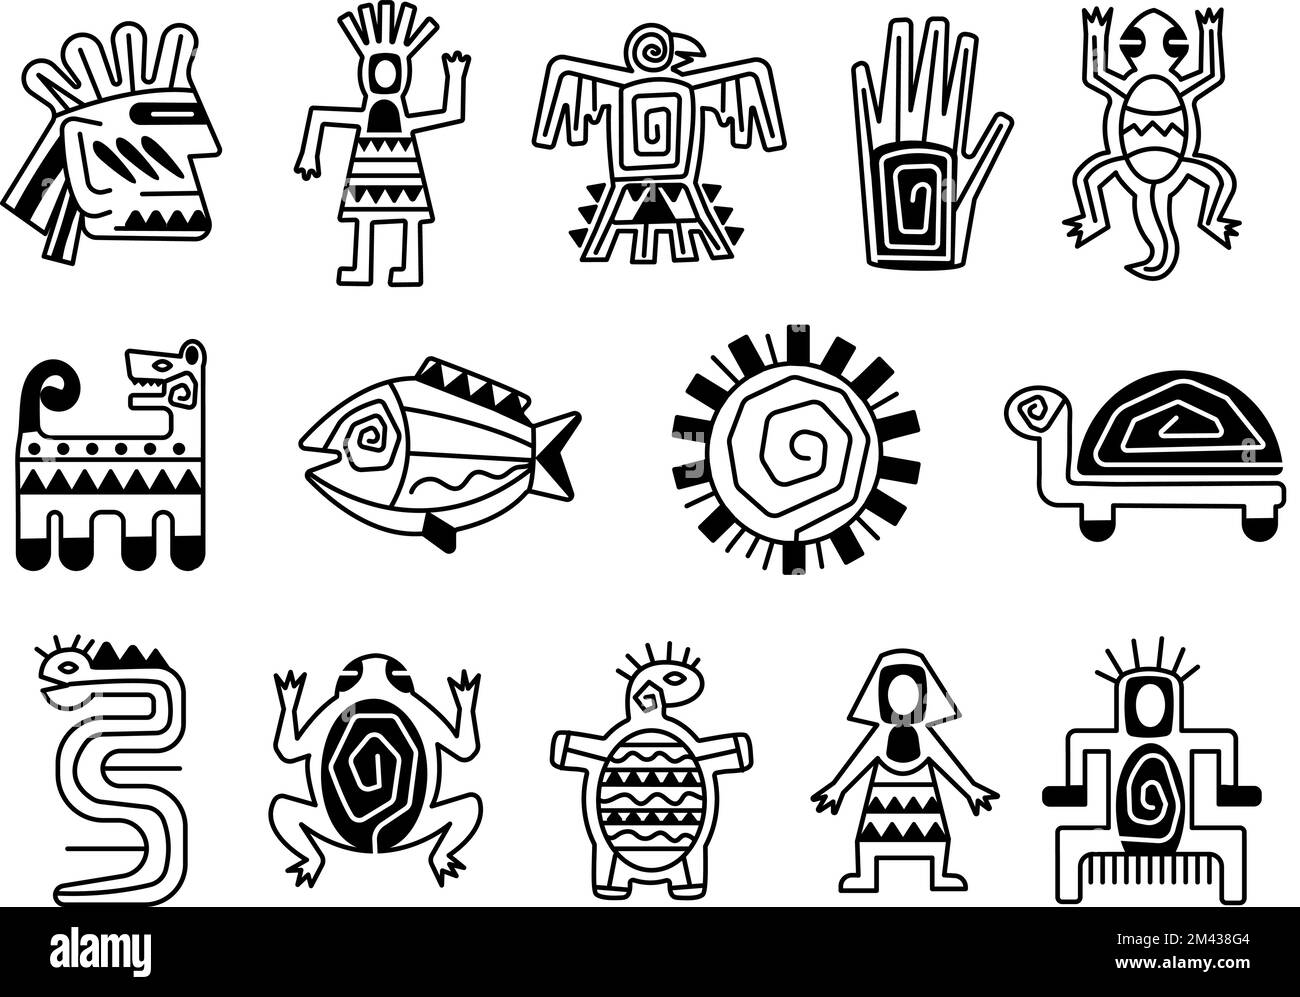 Maya-Totempfähle, Tattoo-ethnische Zeichen. Kunstvolle aztekenmythologie, mexikanische indianer oder inka mythologische Tradition anständige Vektorstammeselemente Stock Vektor